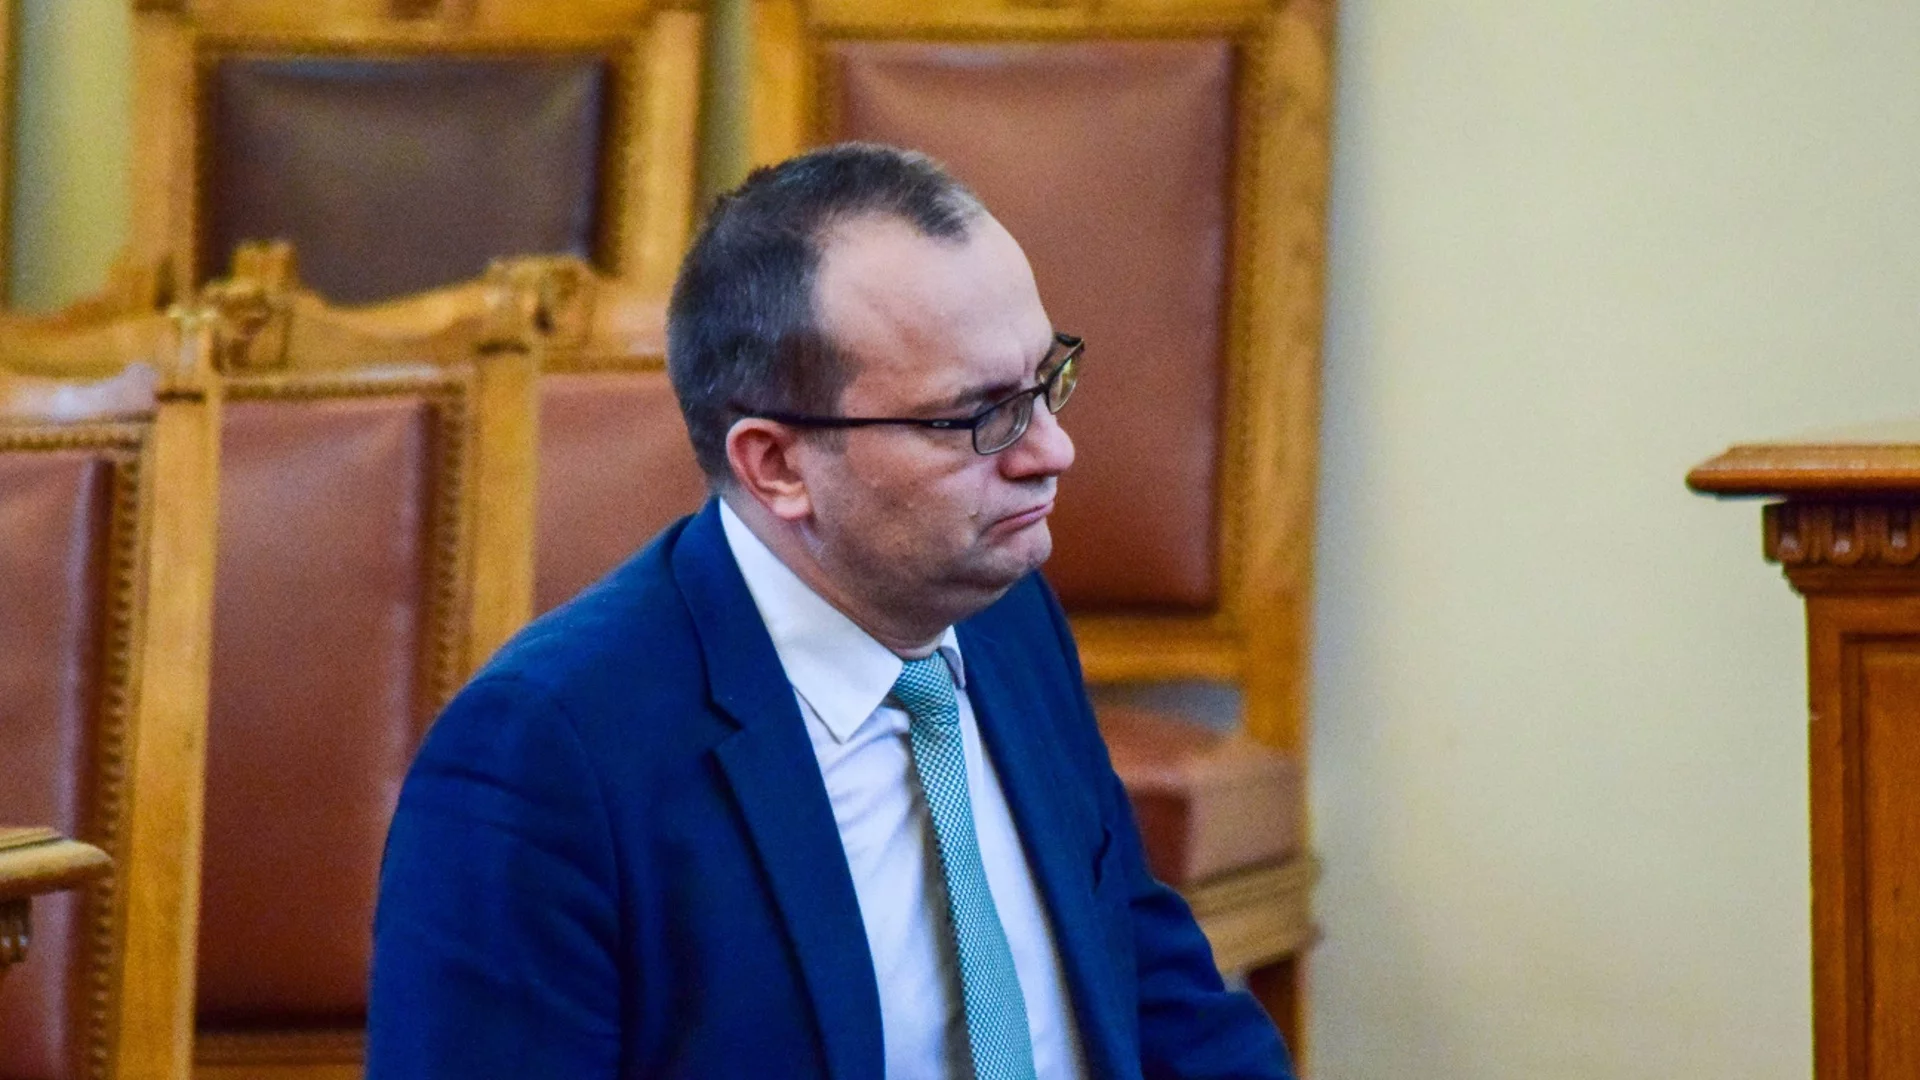 Мартин Димитров: Чудя се на акъла на Главчев да назначи трима областни управители от ДПС